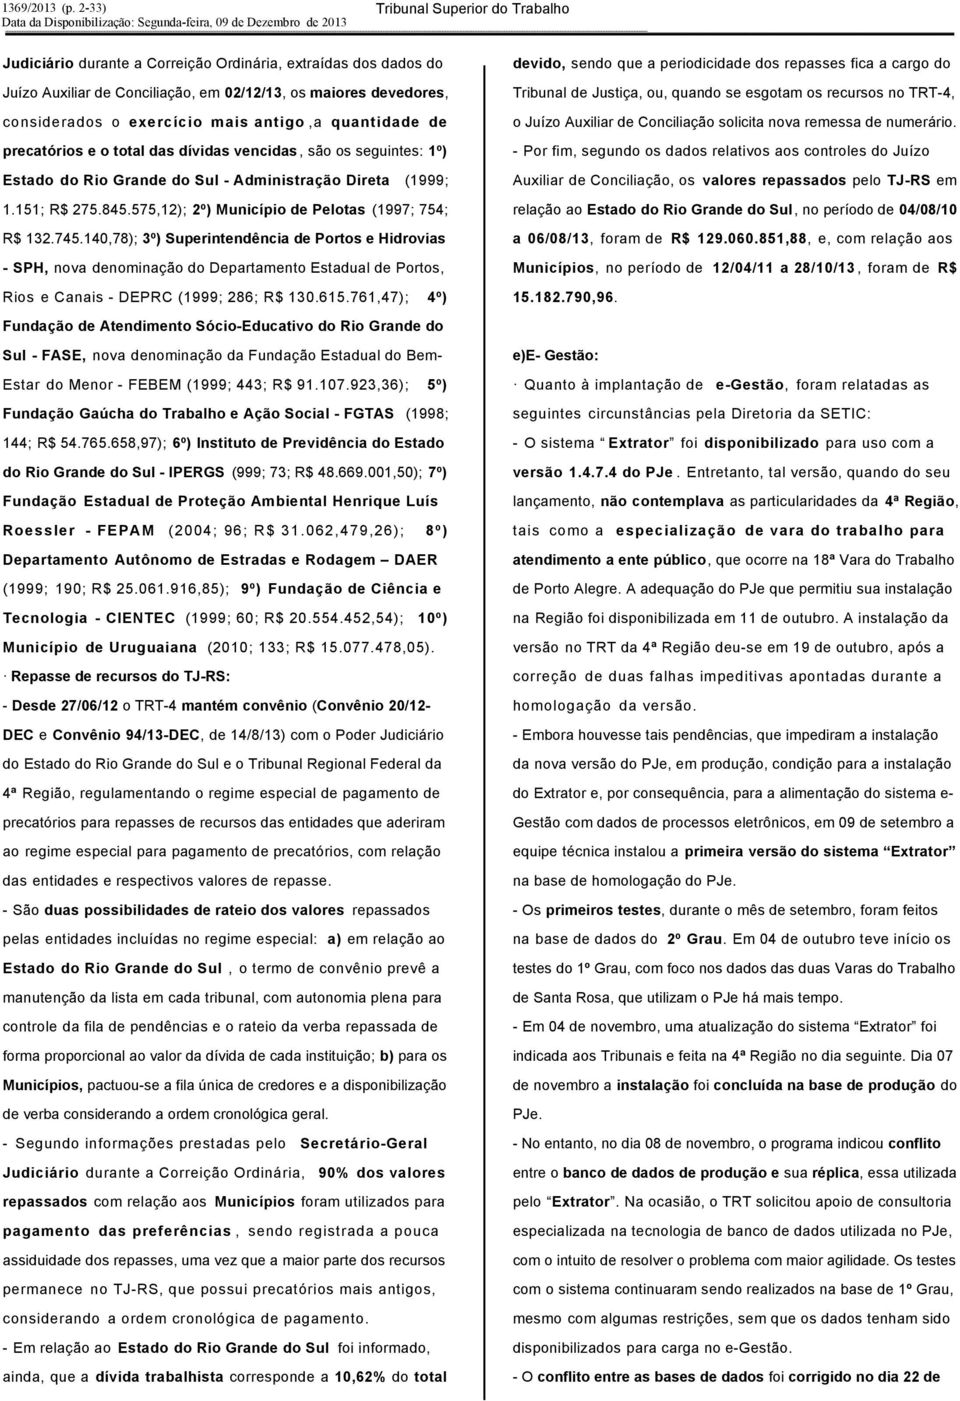 140,78); 3º) Superintendência de Portos e Hidrovias - SPH, nova denominação do Departamento Estadual de Portos, Rios e Canais - DEPRC (1999; 286; R$ 130.615.